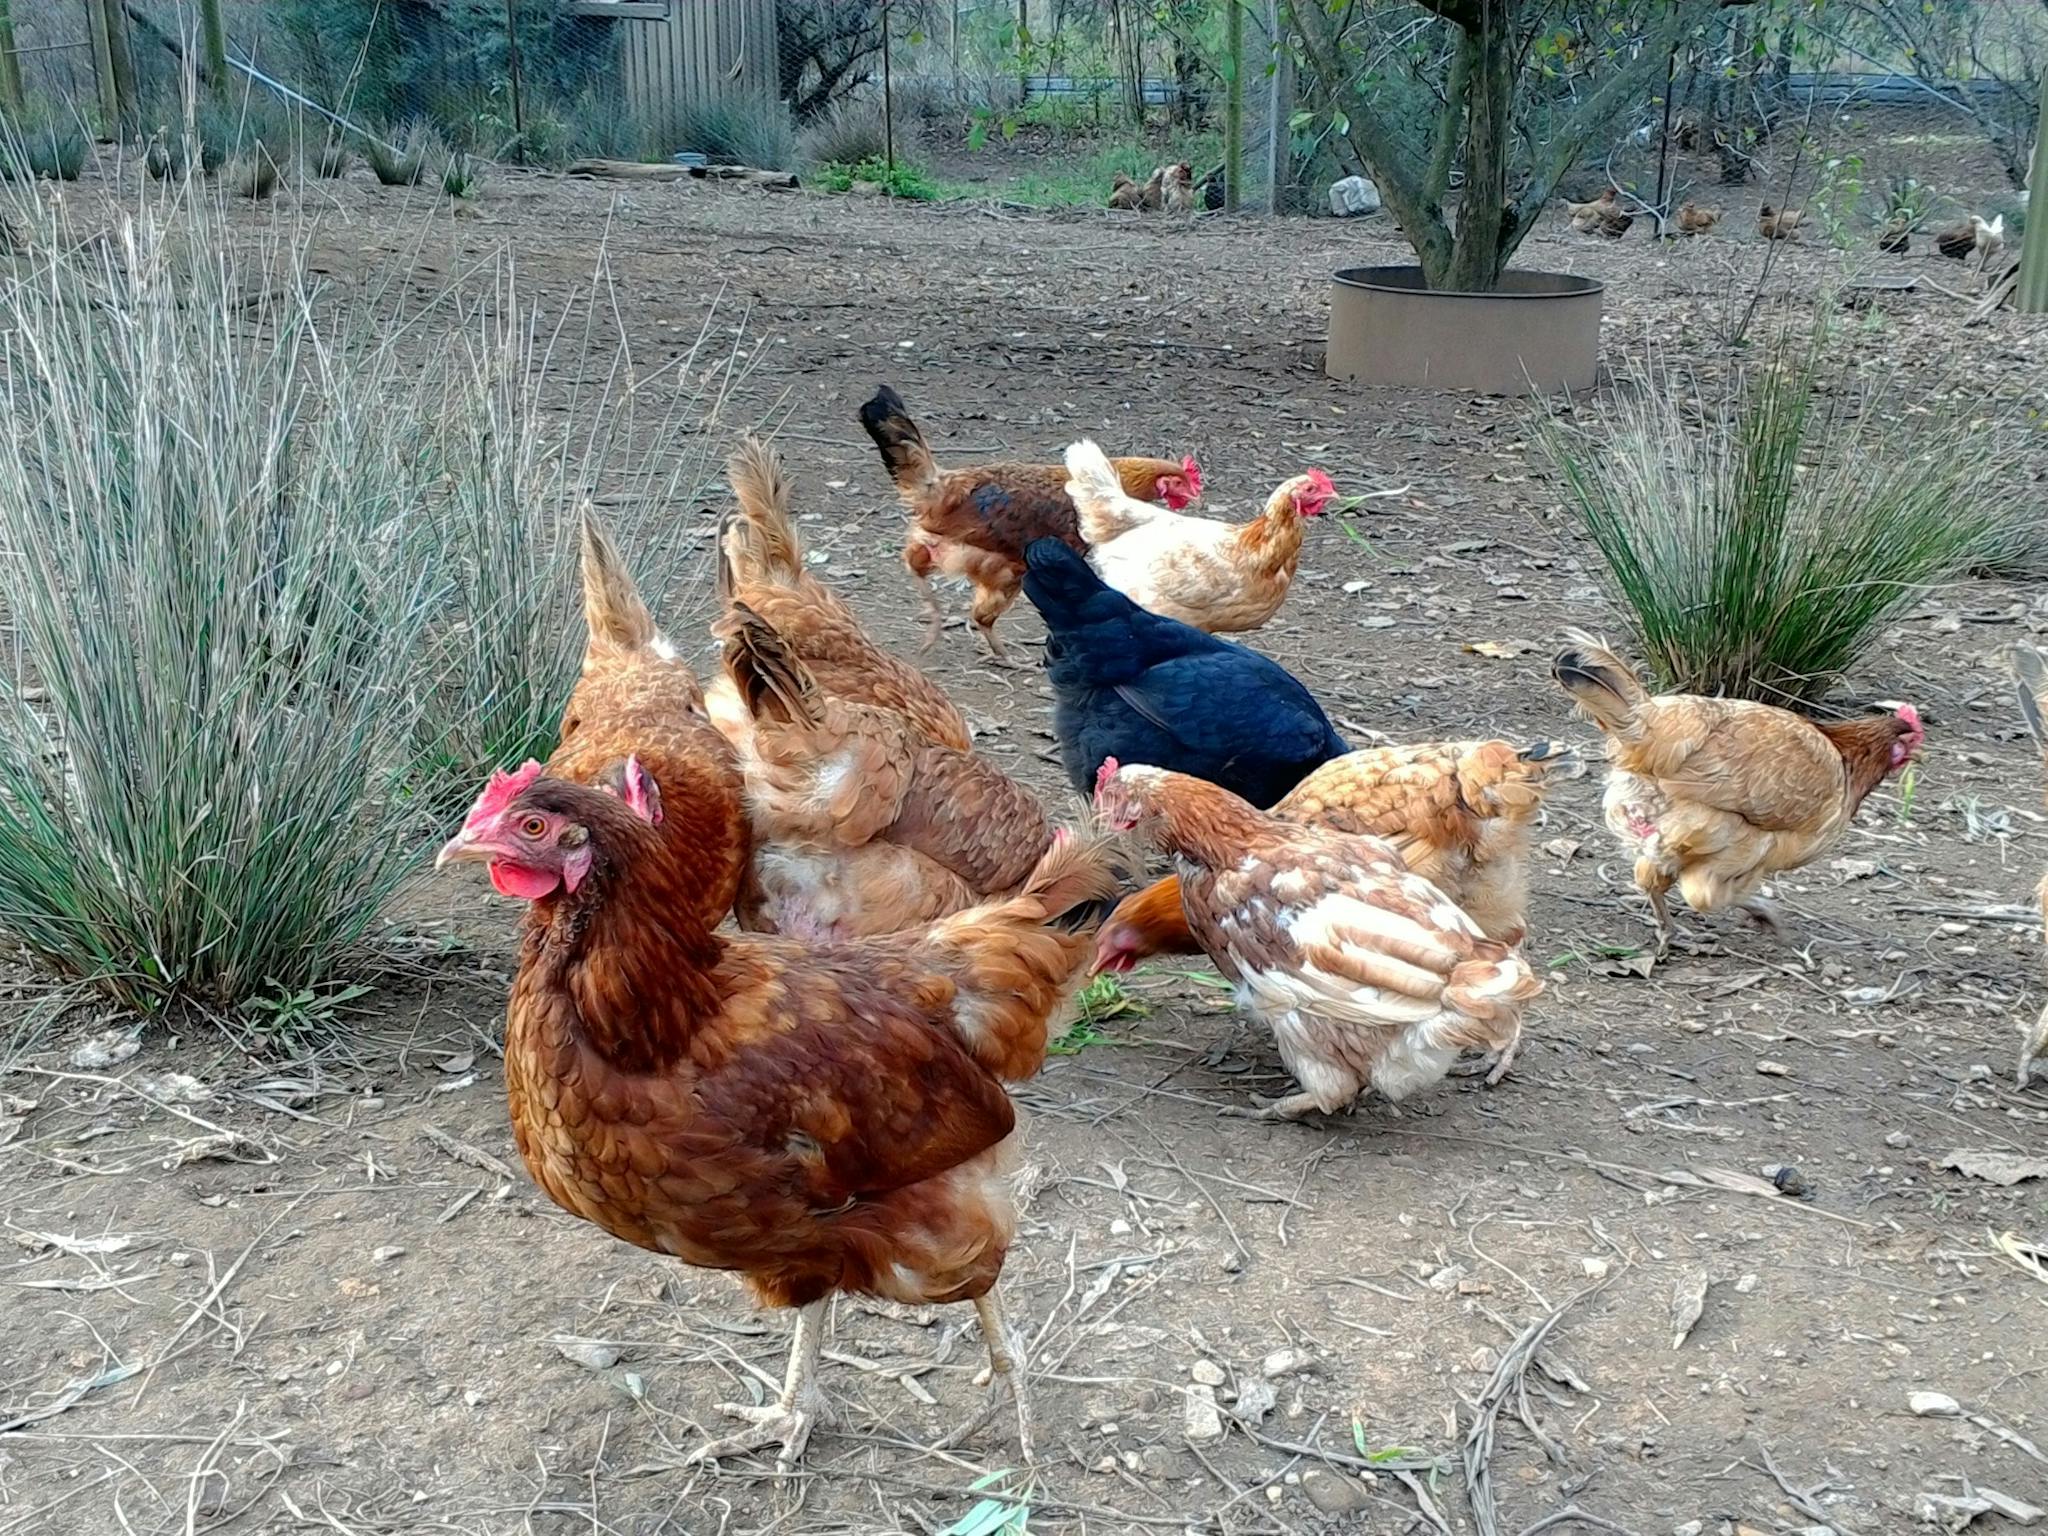 Chicken feeding on the farm